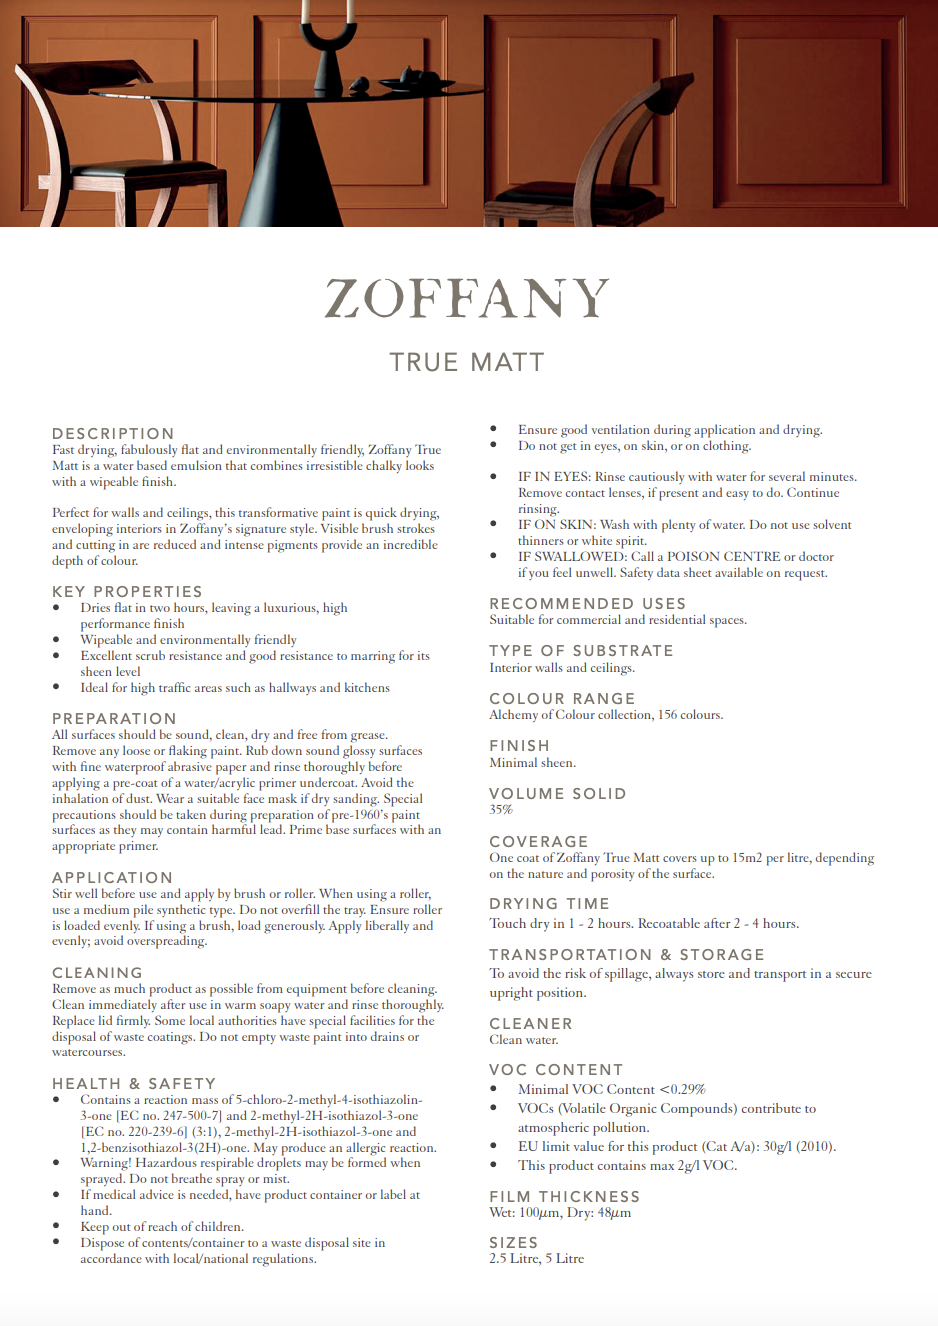 Zoffany Green Tea True Matt Emulsion